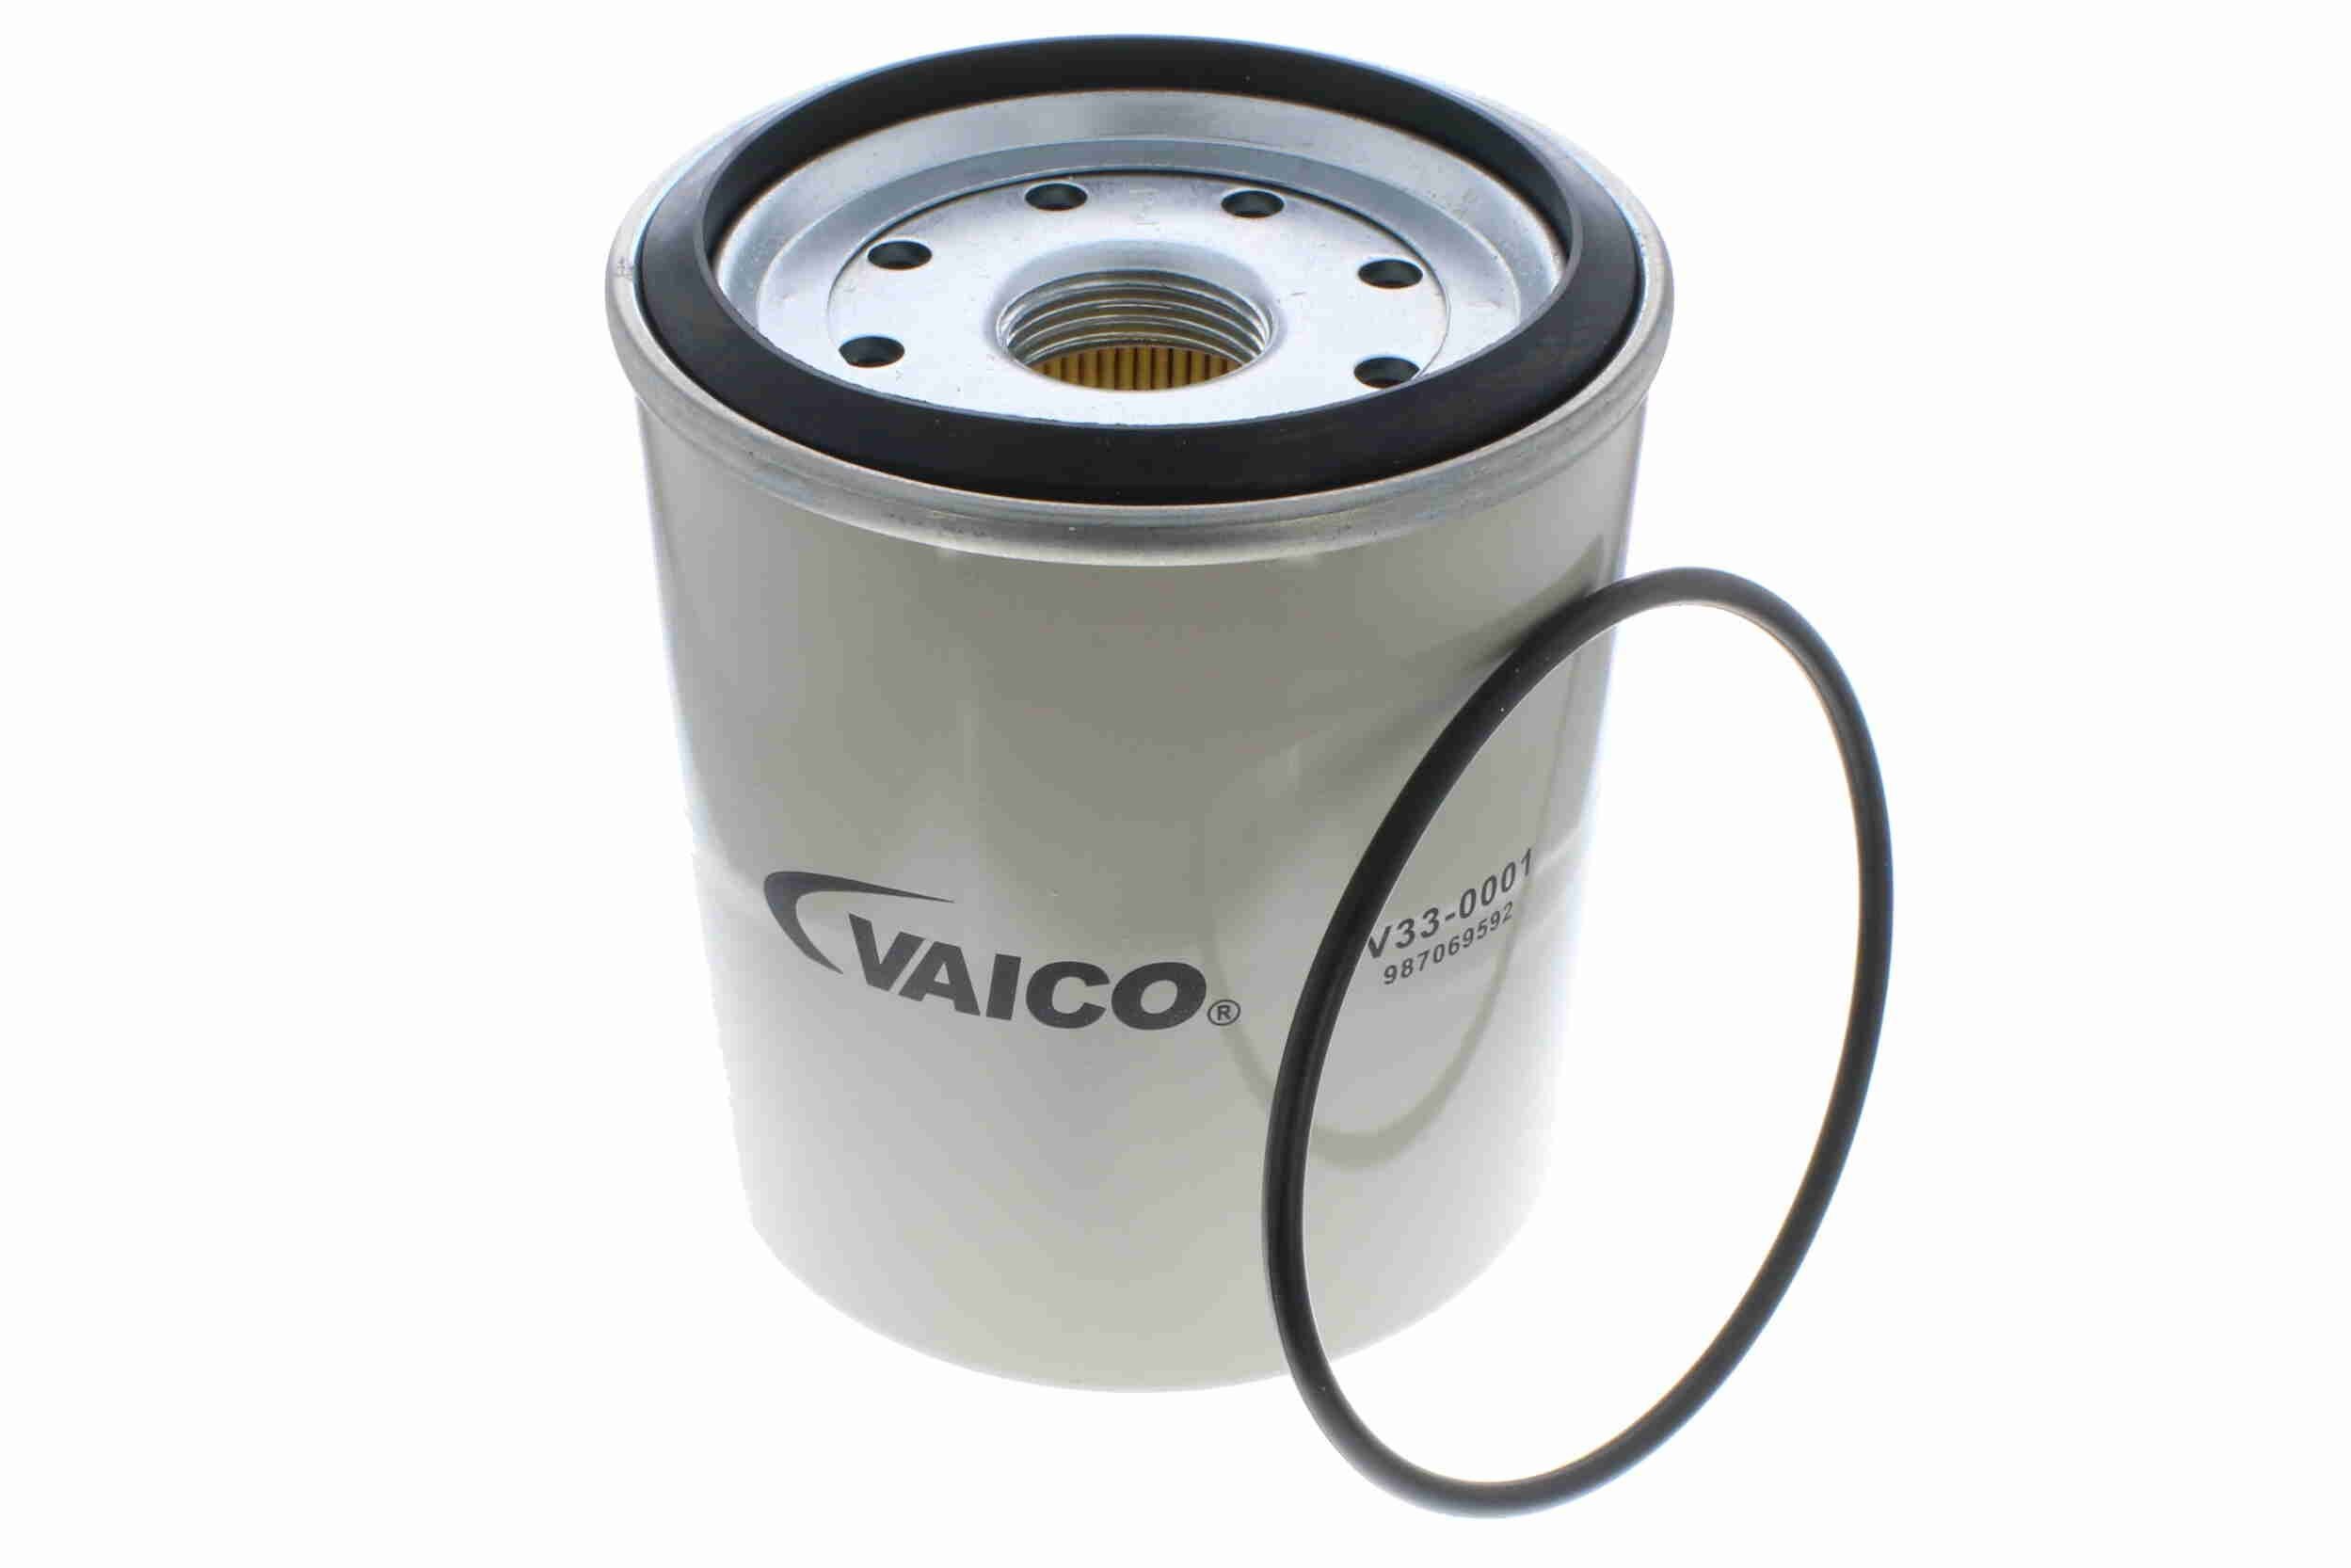 VAICO V33-0001 Filtro carburante Filtro ad avvitamento, Qualità de VAICO originale